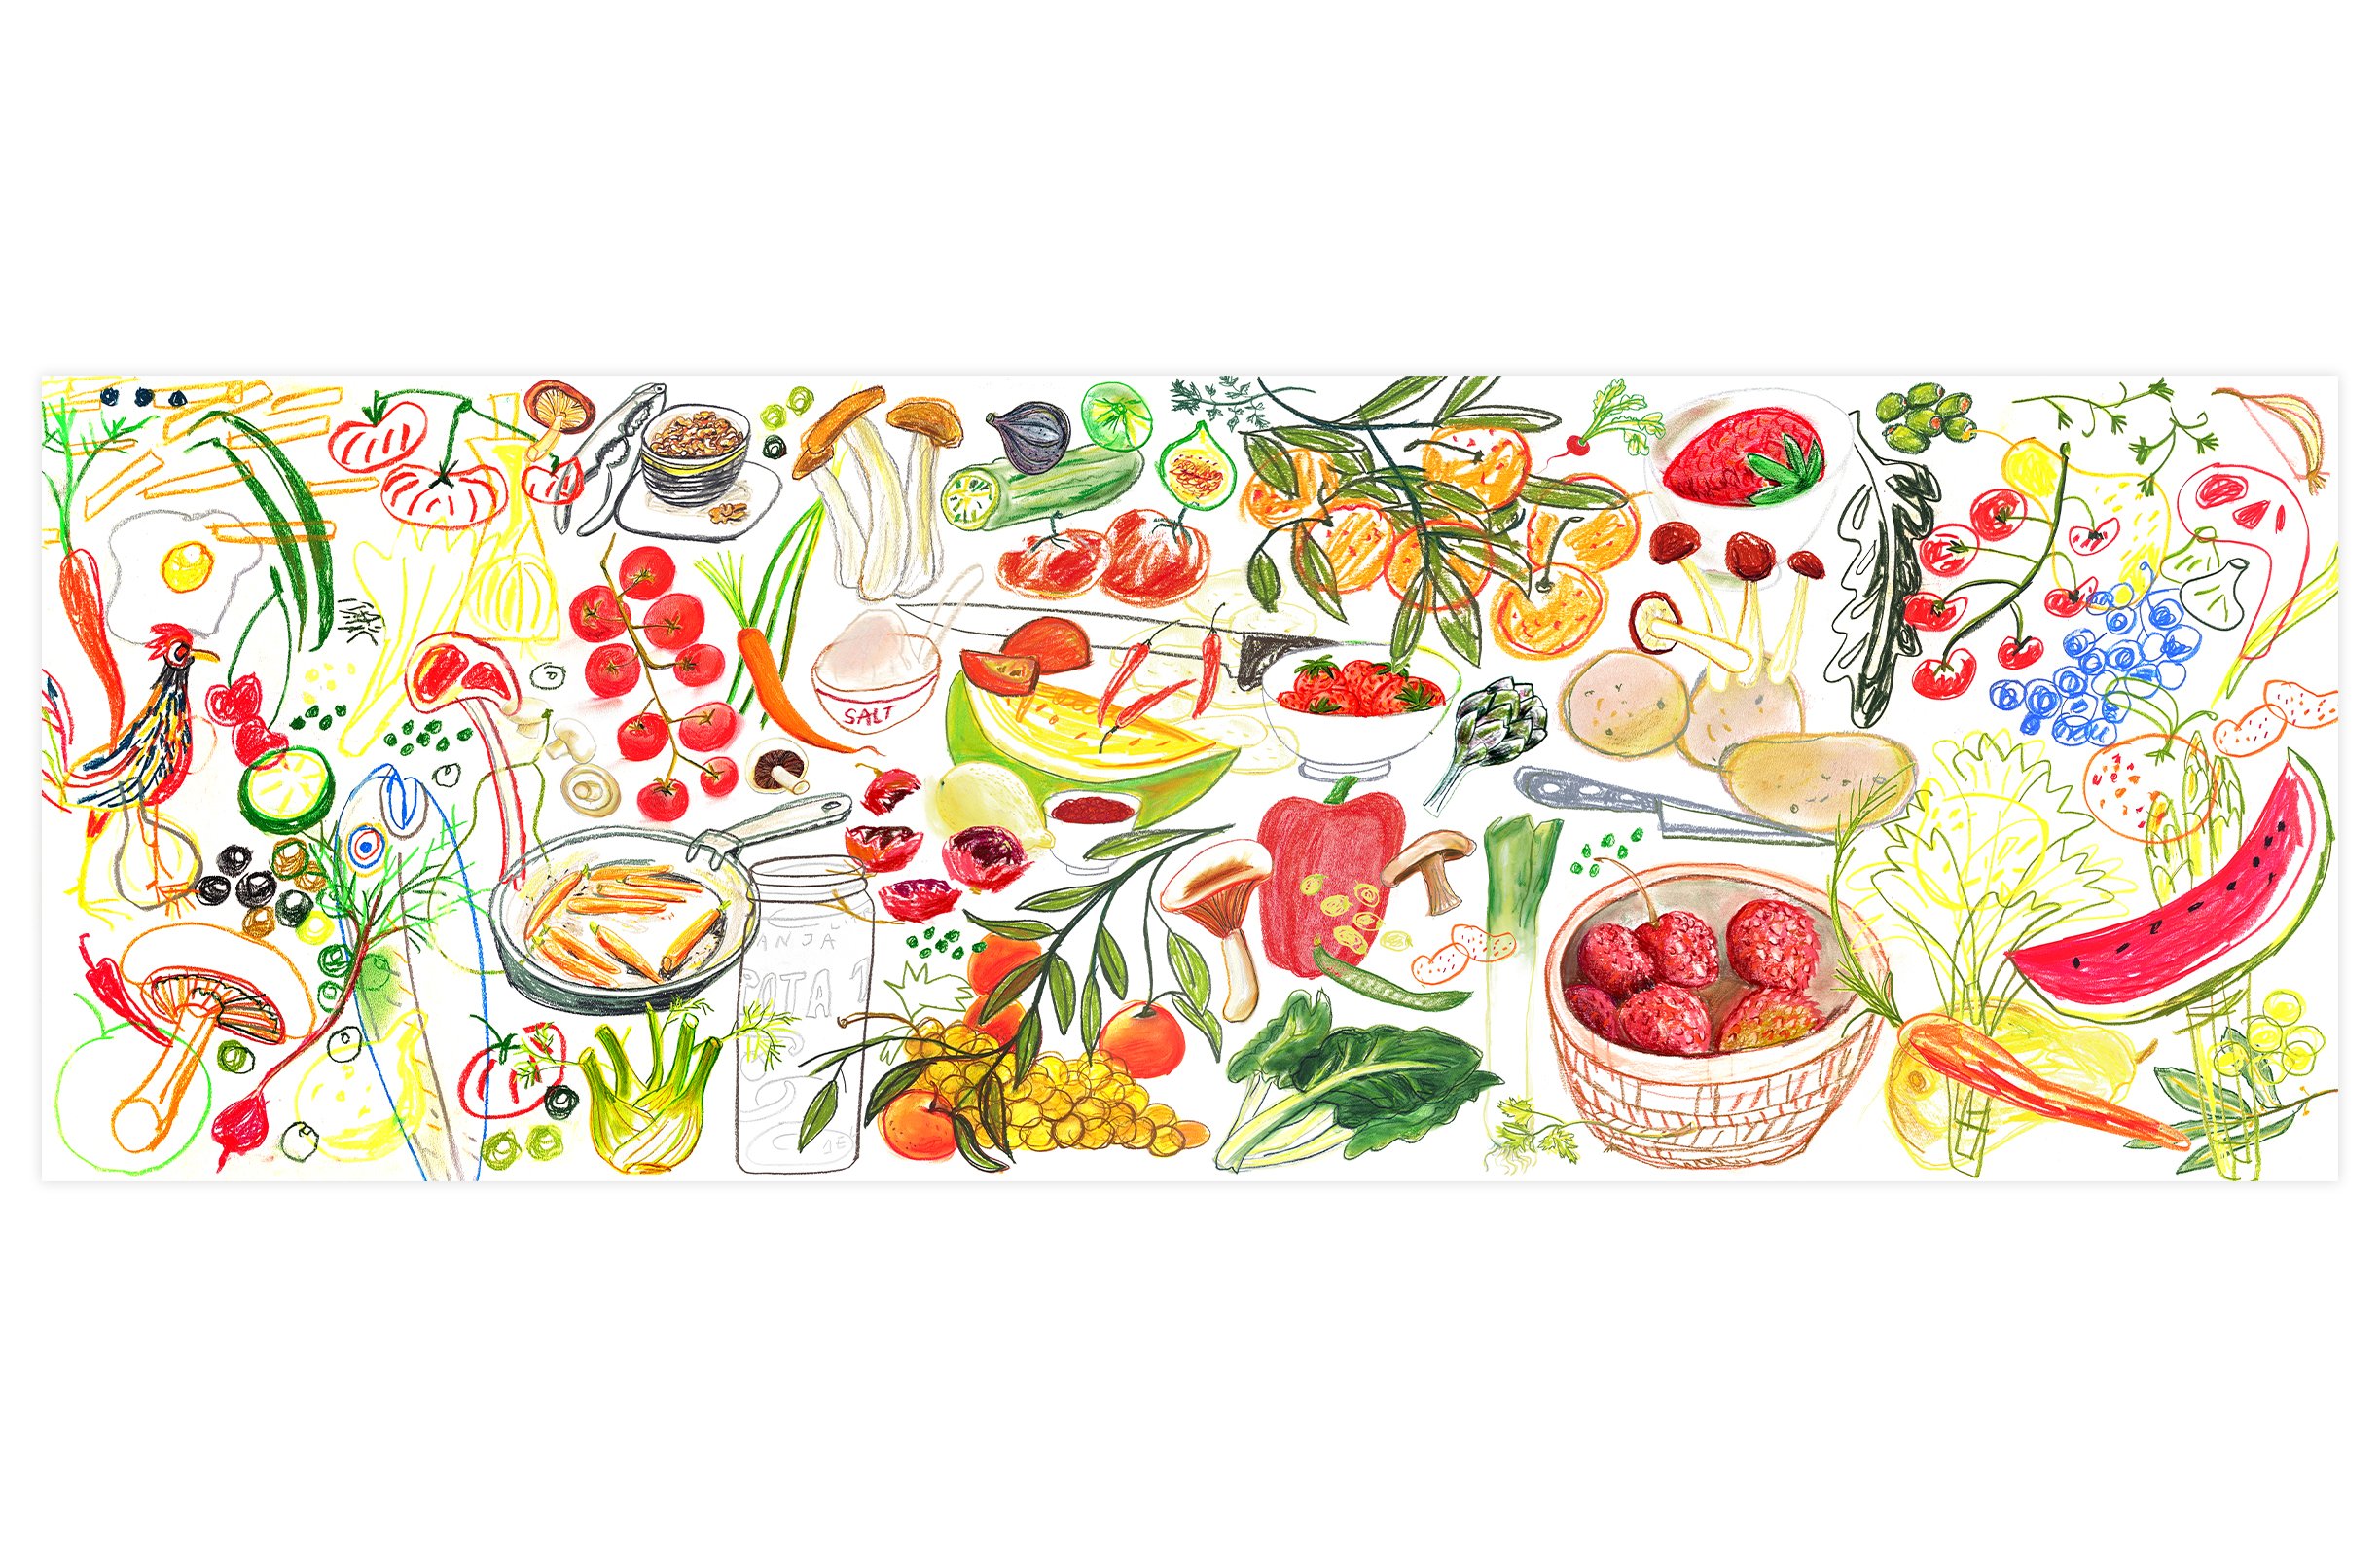 Bodegon de comida mediterranea en una ilustracion de gran tamaño, llena de color y alegria